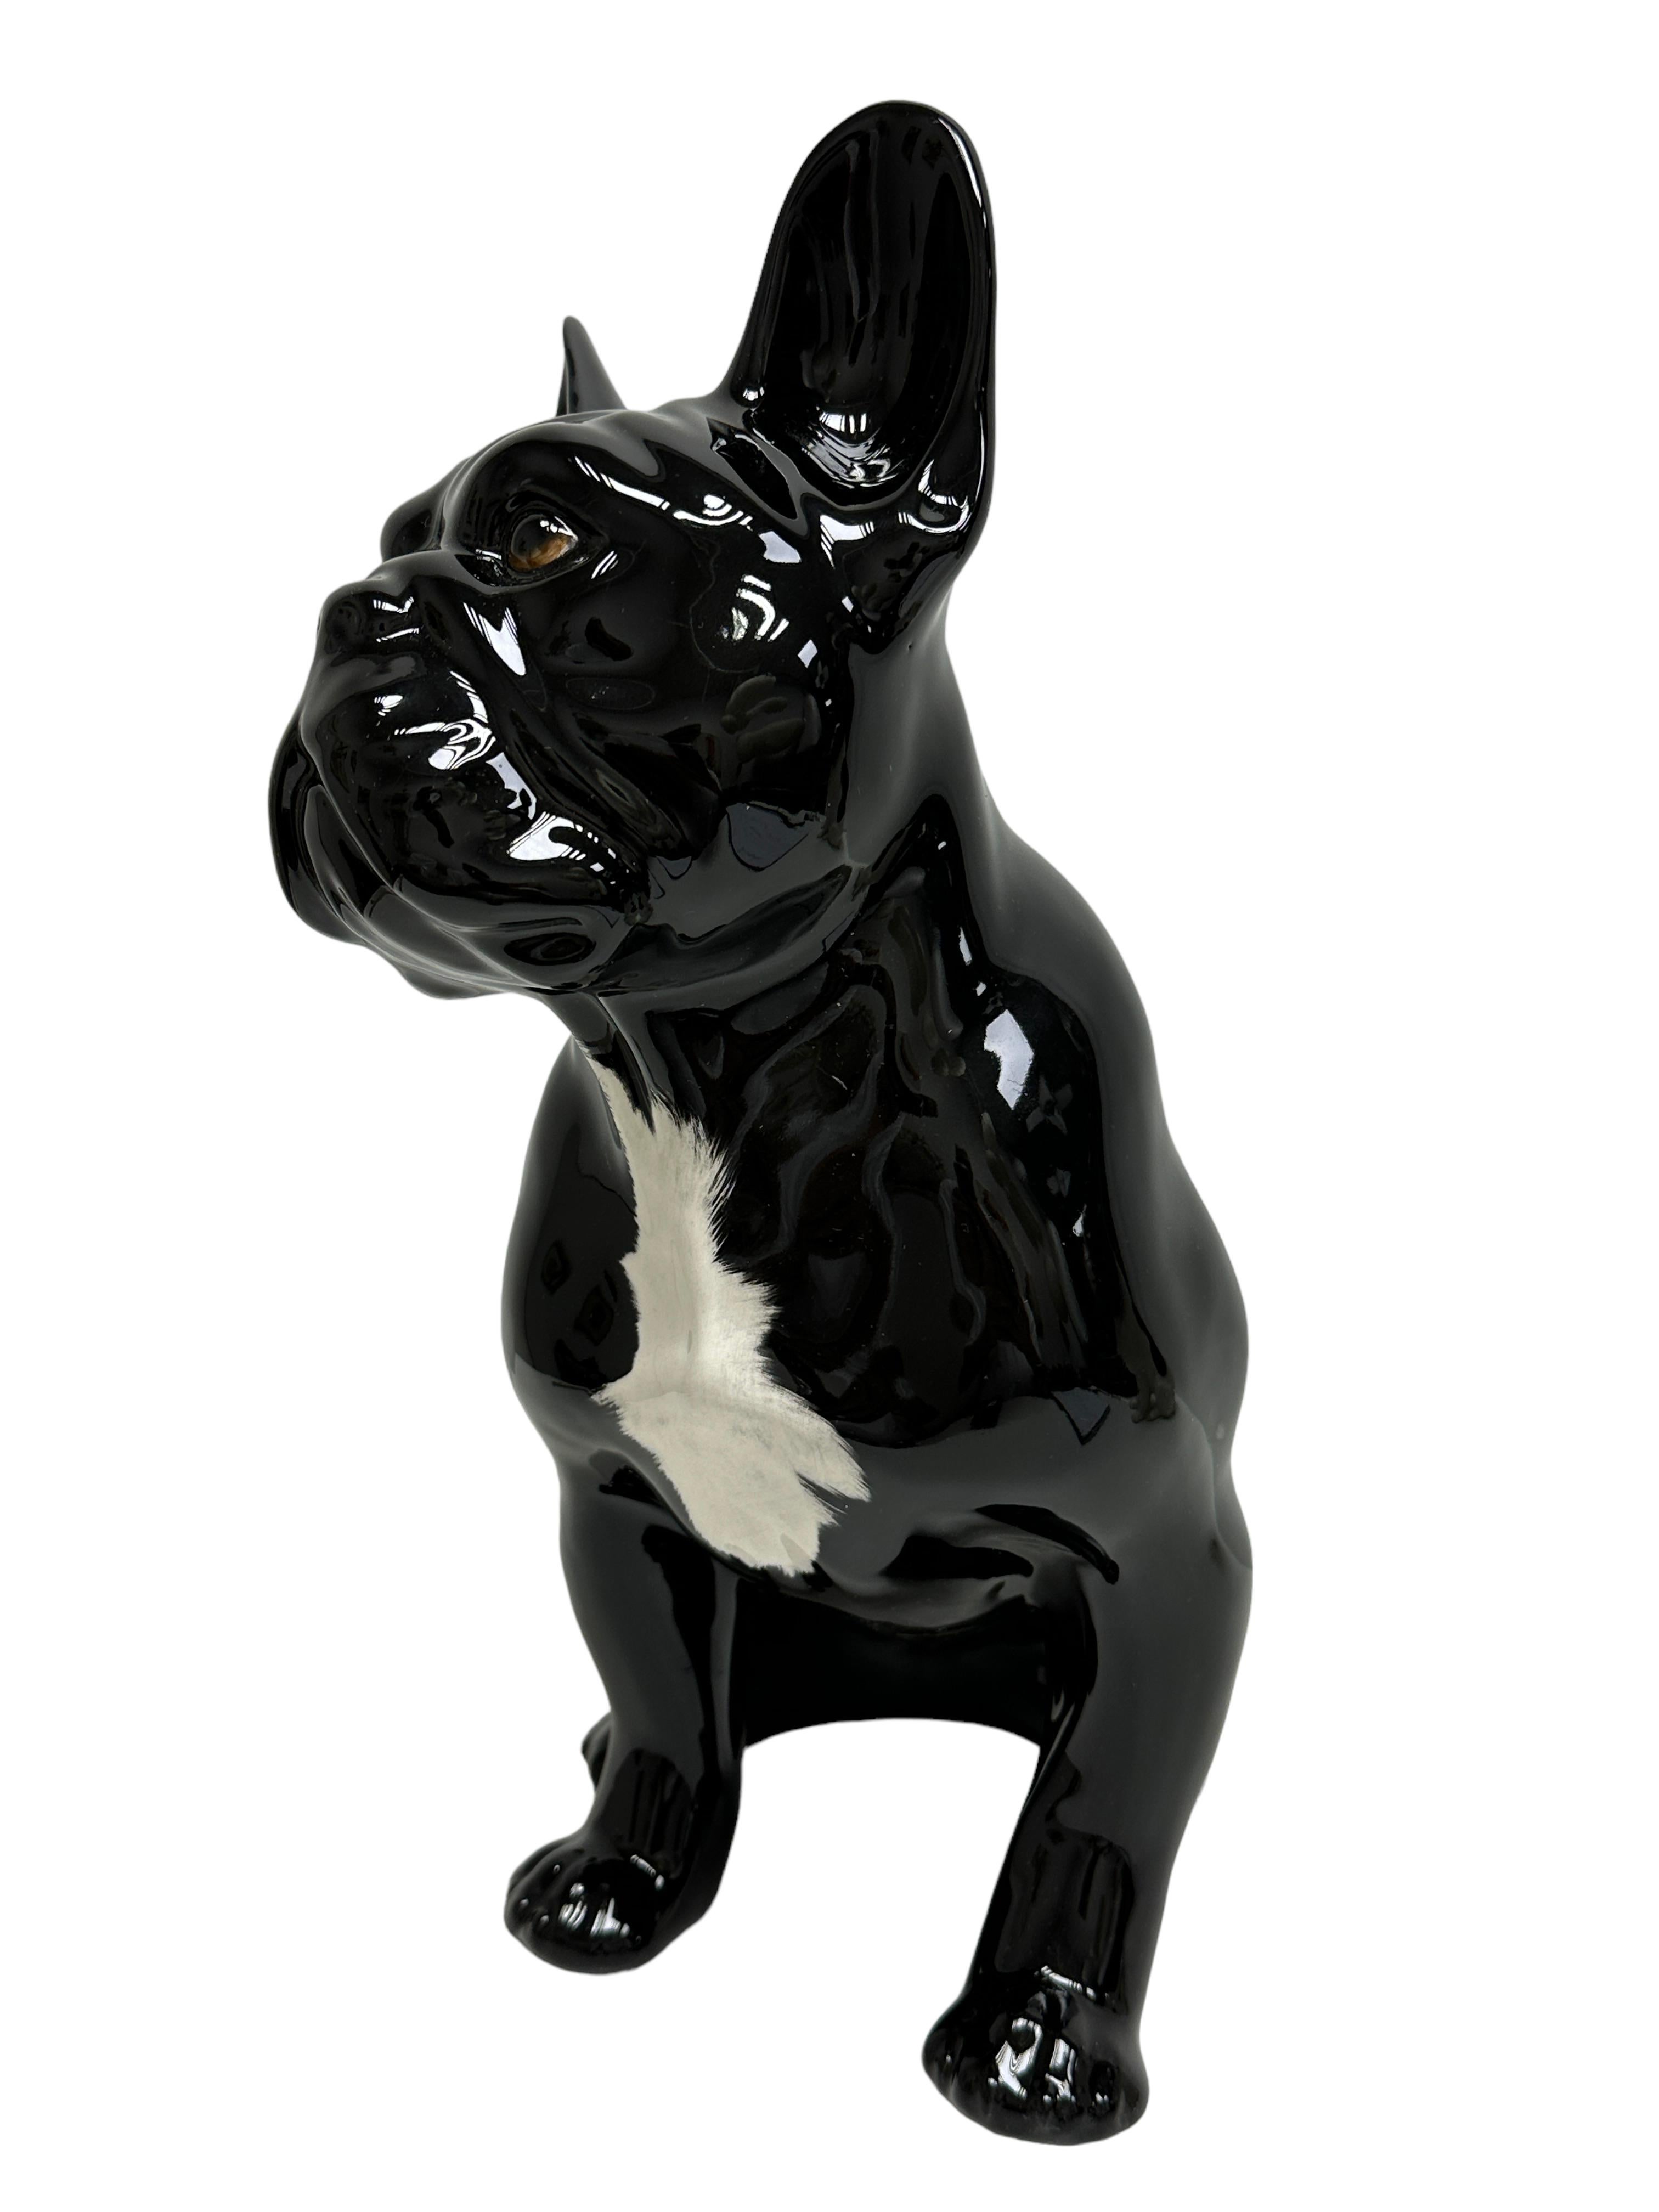 Klassische Keramikfigur aus dem 20. Jahrhundert, in schönem Zustand. Figur Statue in Form eines Stierhundes in Schwarz-Weiß-Tönen. Es wurde wahrscheinlich in den 1980er Jahren in Italien hergestellt, es ist am Boden markiert.
Eine schöne Ergänzung